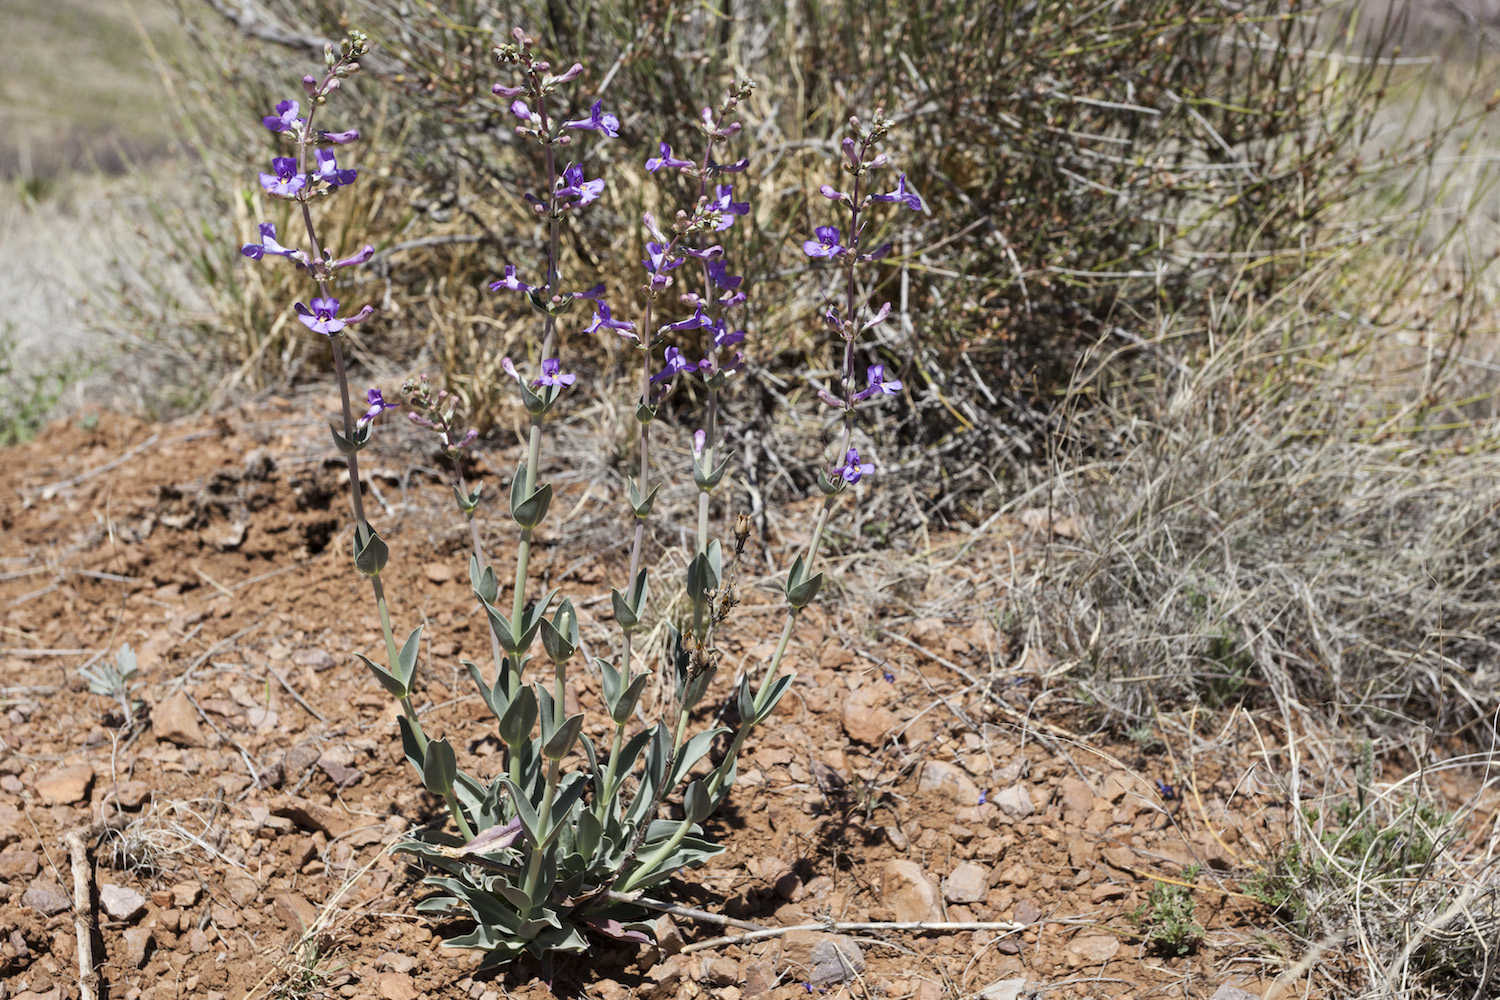 Purple flowers and growth habit of Penstemon fendleri